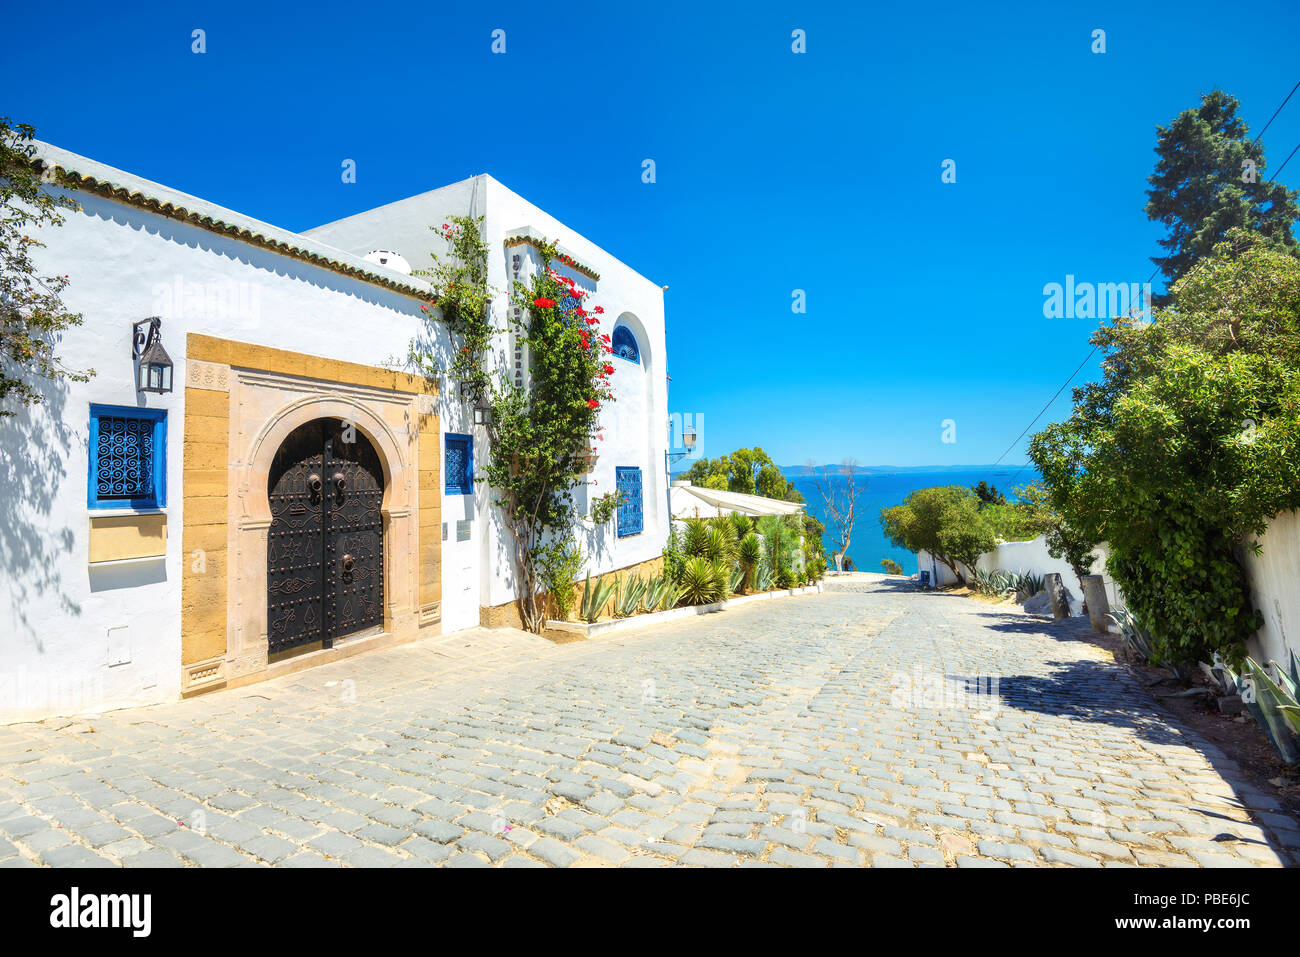 Street in white blue town Sidi Bou Said. Tunisia, North Africa Stock Photo